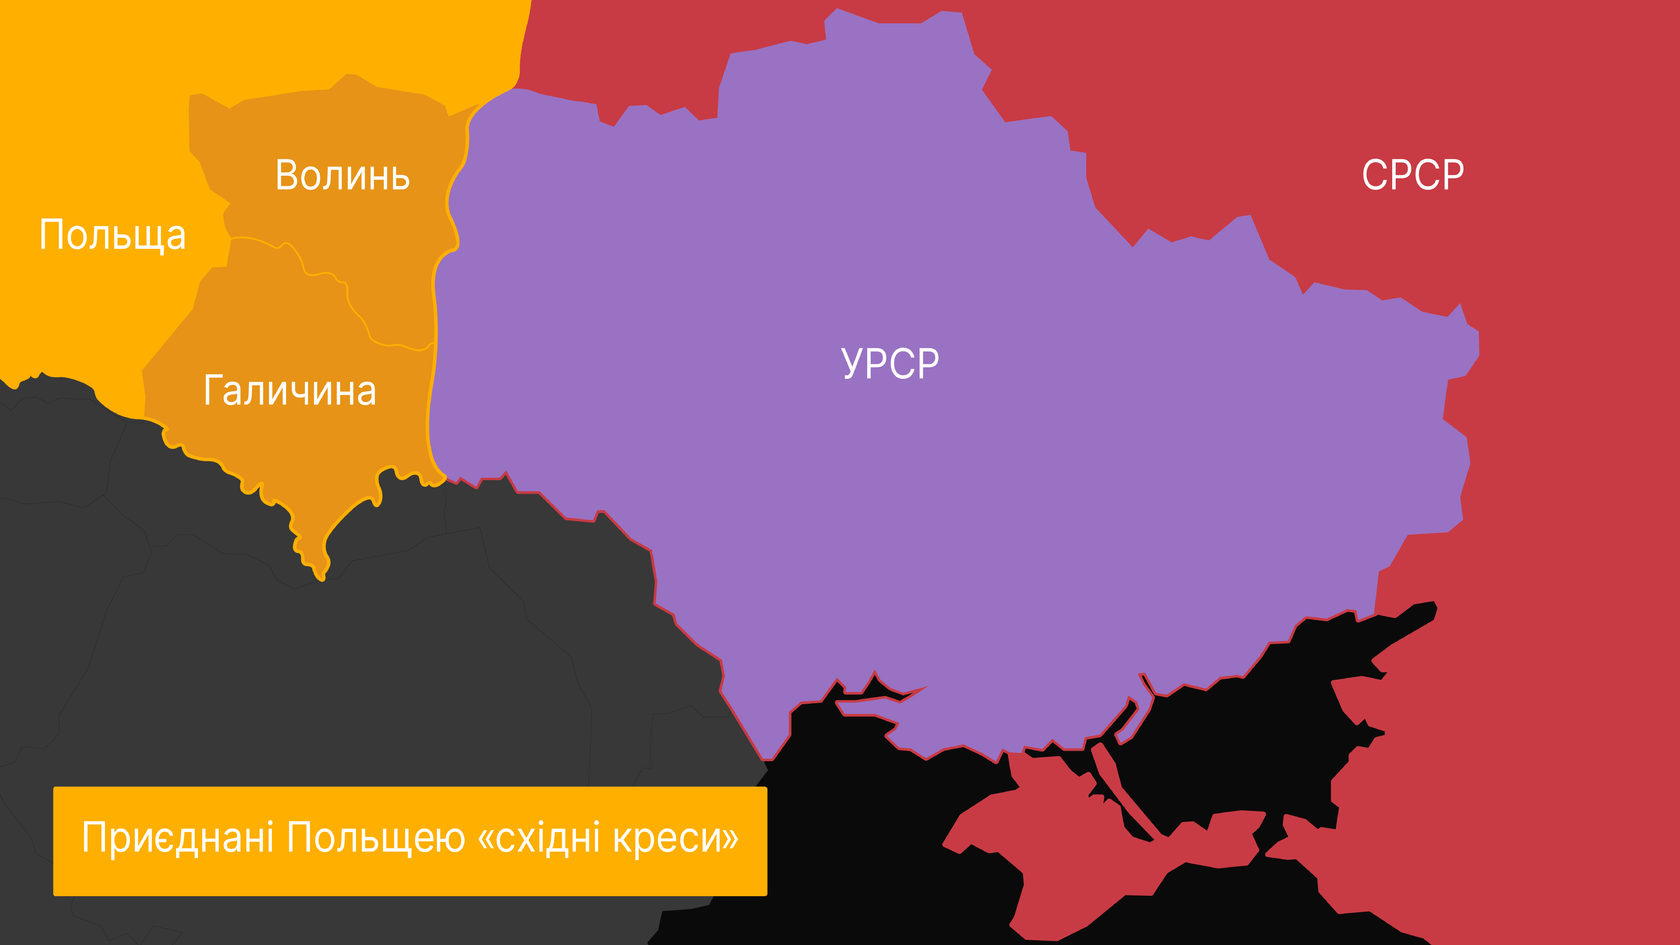 Реферат: Культурна революція в Україні 1928-1939 років